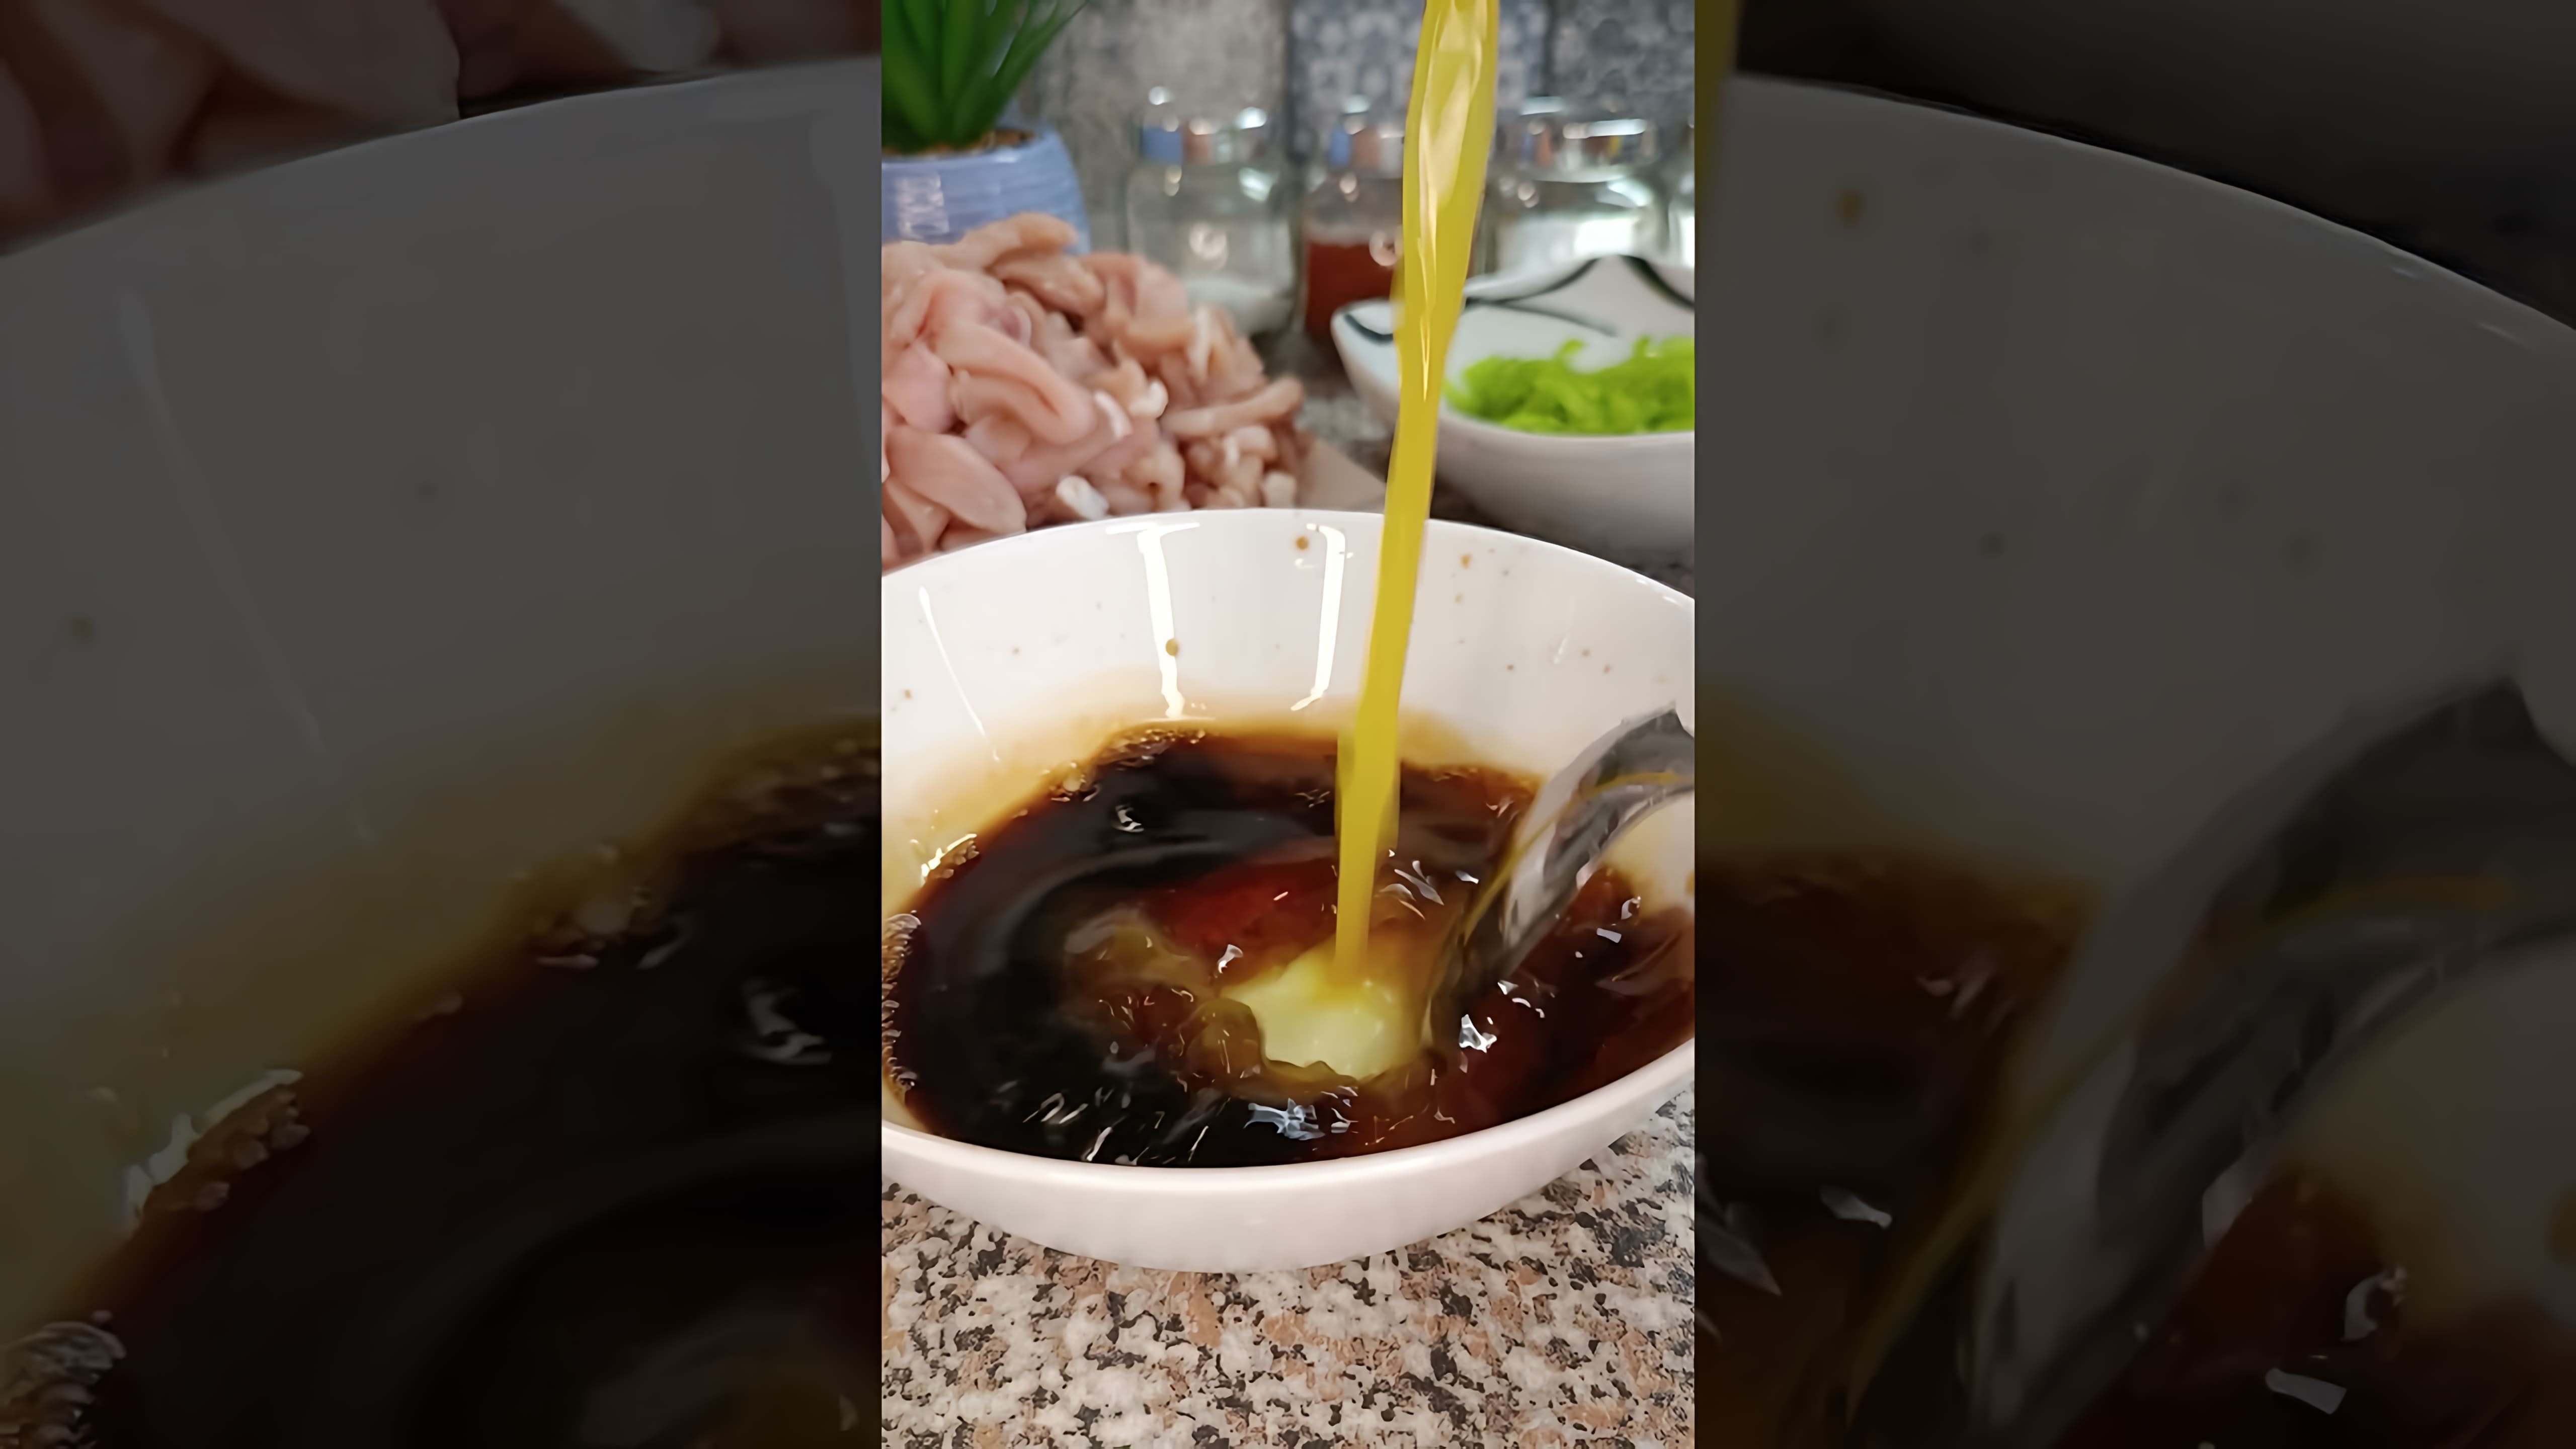 В этом видео демонстрируется рецепт приготовления свинины в кисло-сладком соусе